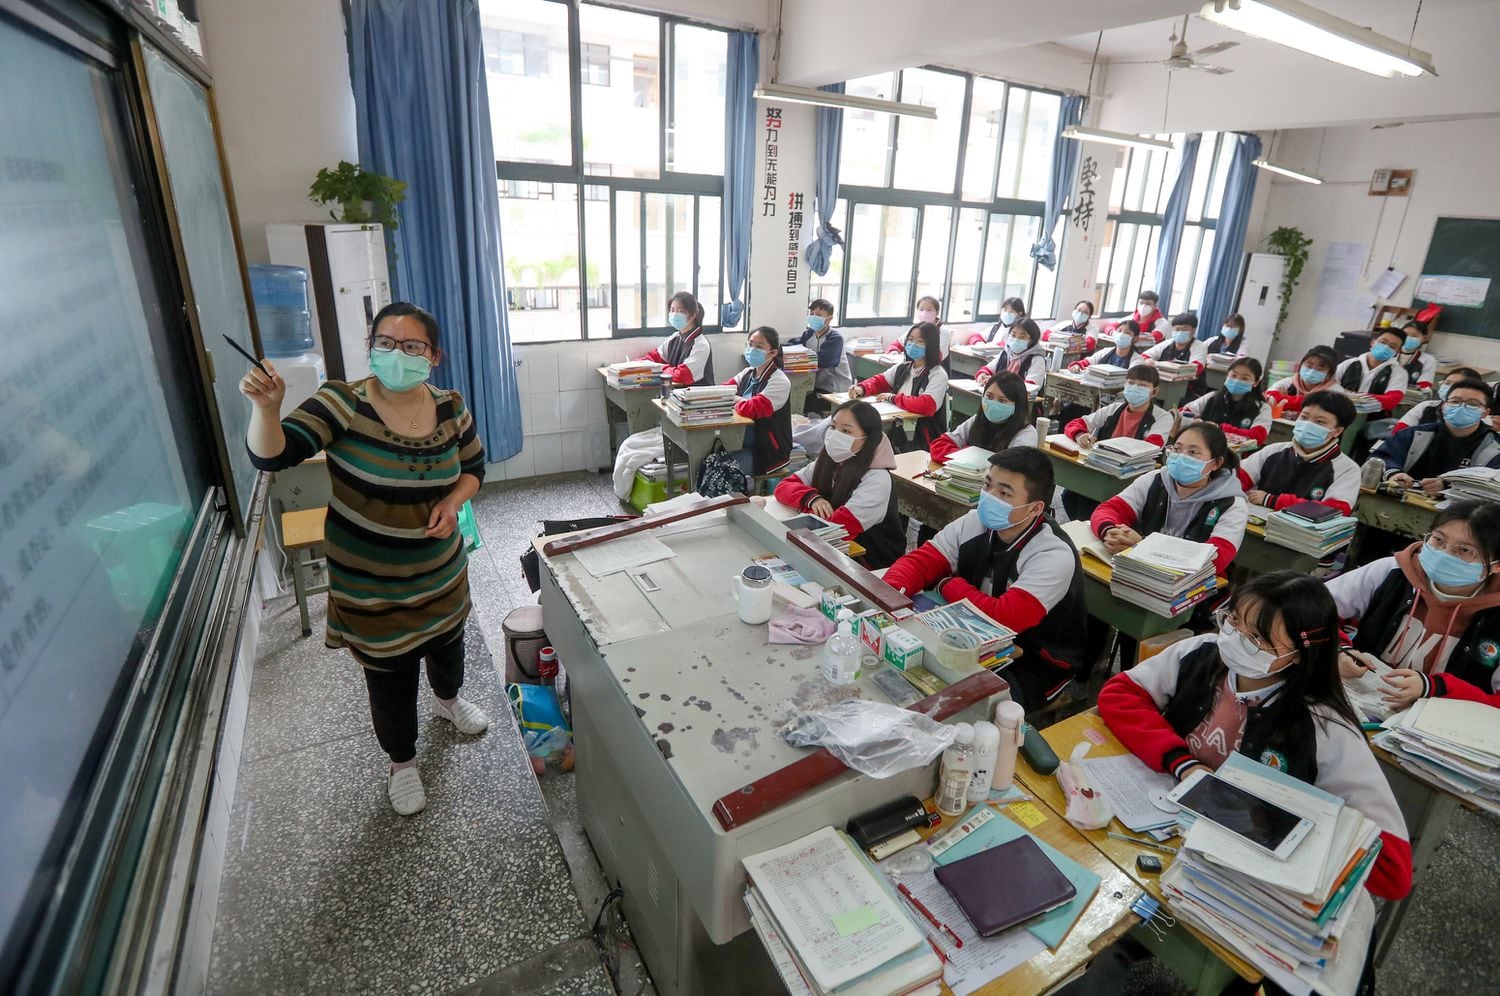 Alumnos en clase en un colegio de la provincia china de Sichuan.

09/04/2020 ONLY FOR USE IN SPAIN